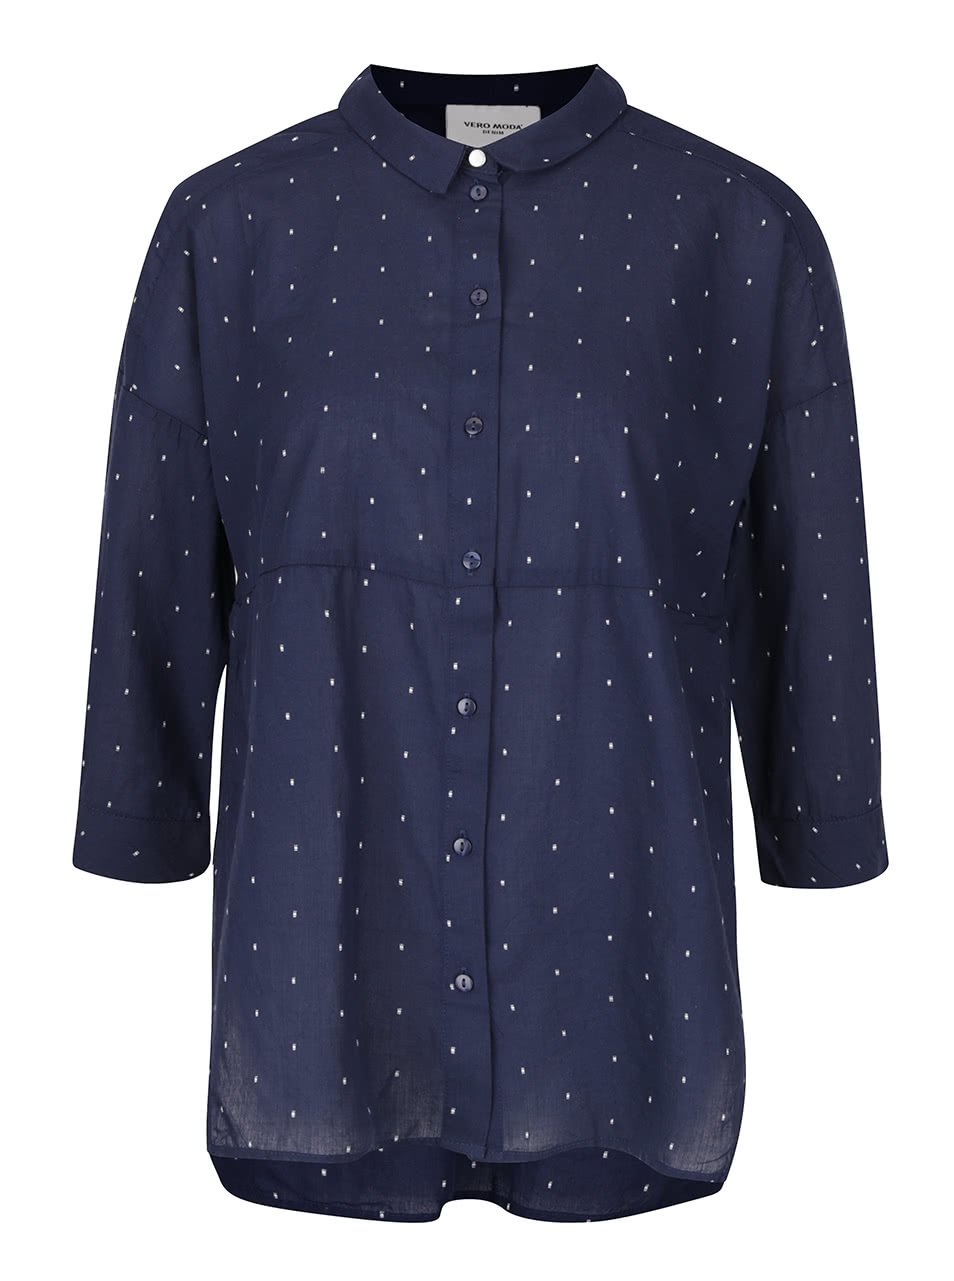 Tmavě modrá volnější košile s 3/4 rukávy a jemným vzorem Vero Moda Cille